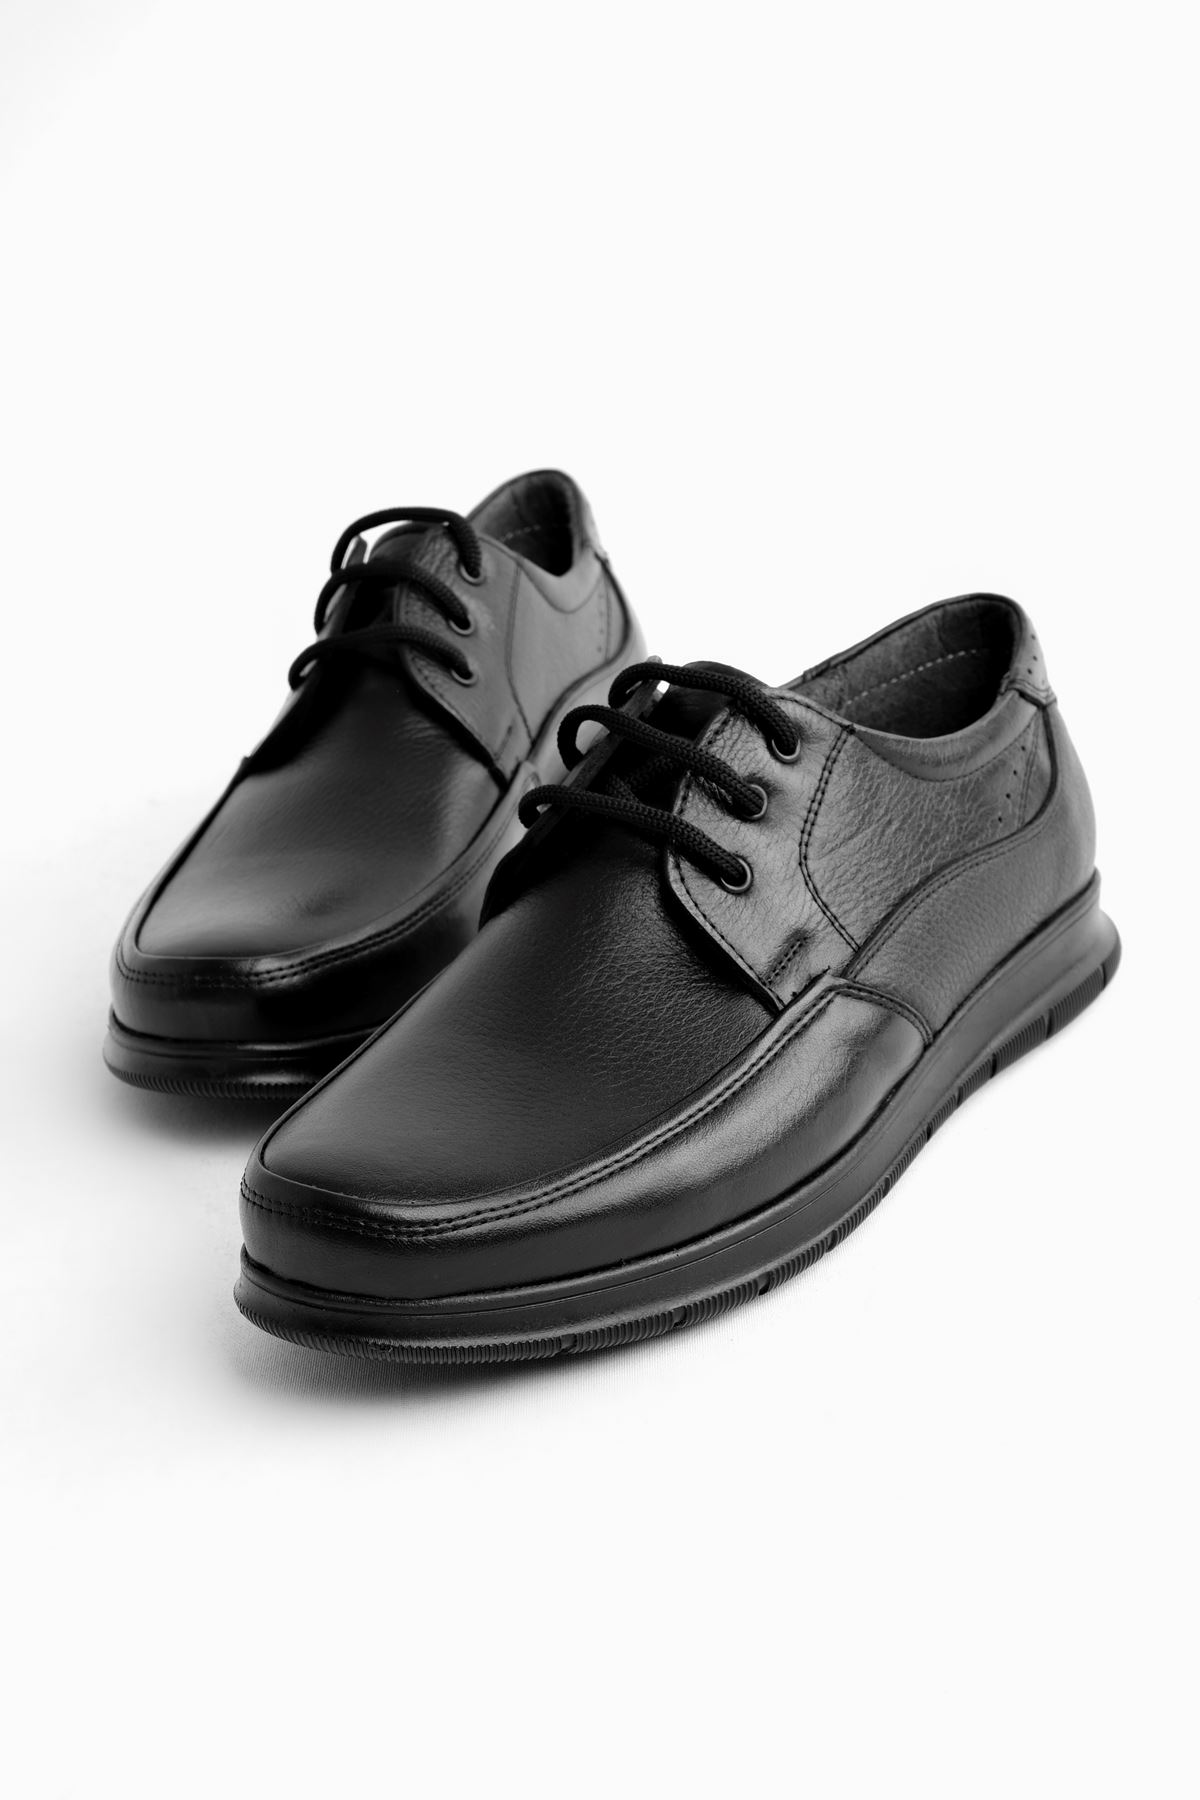 Tegan Erkek Hakiki Deri Klasik Ayakkabı-siyah